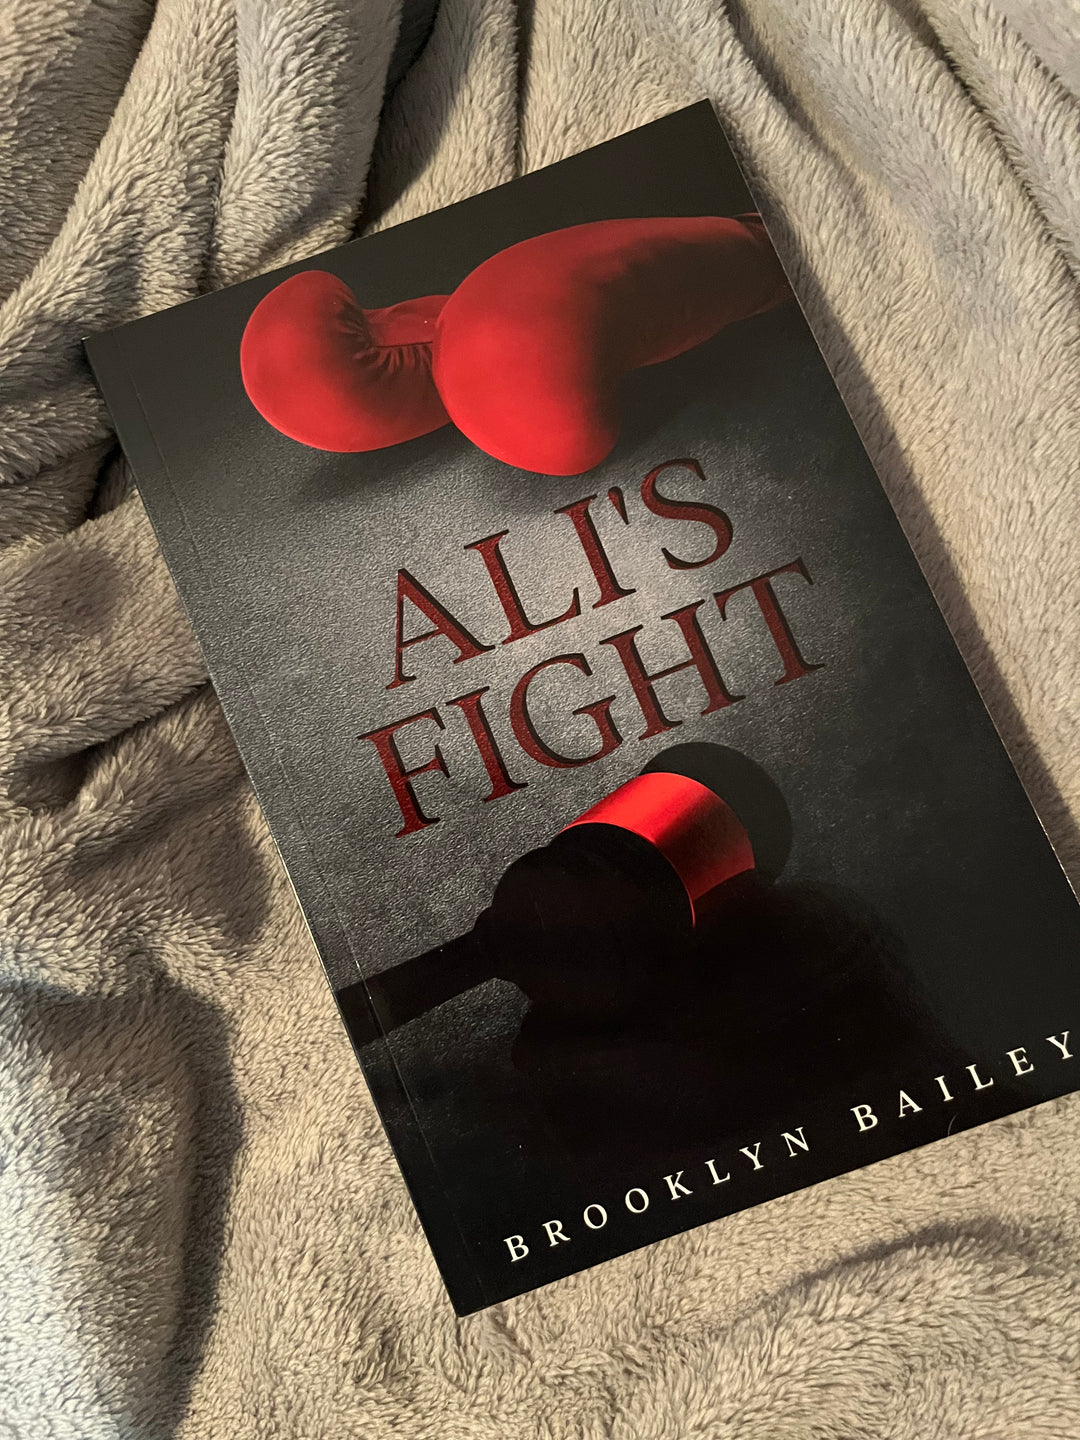 Ali's Fight